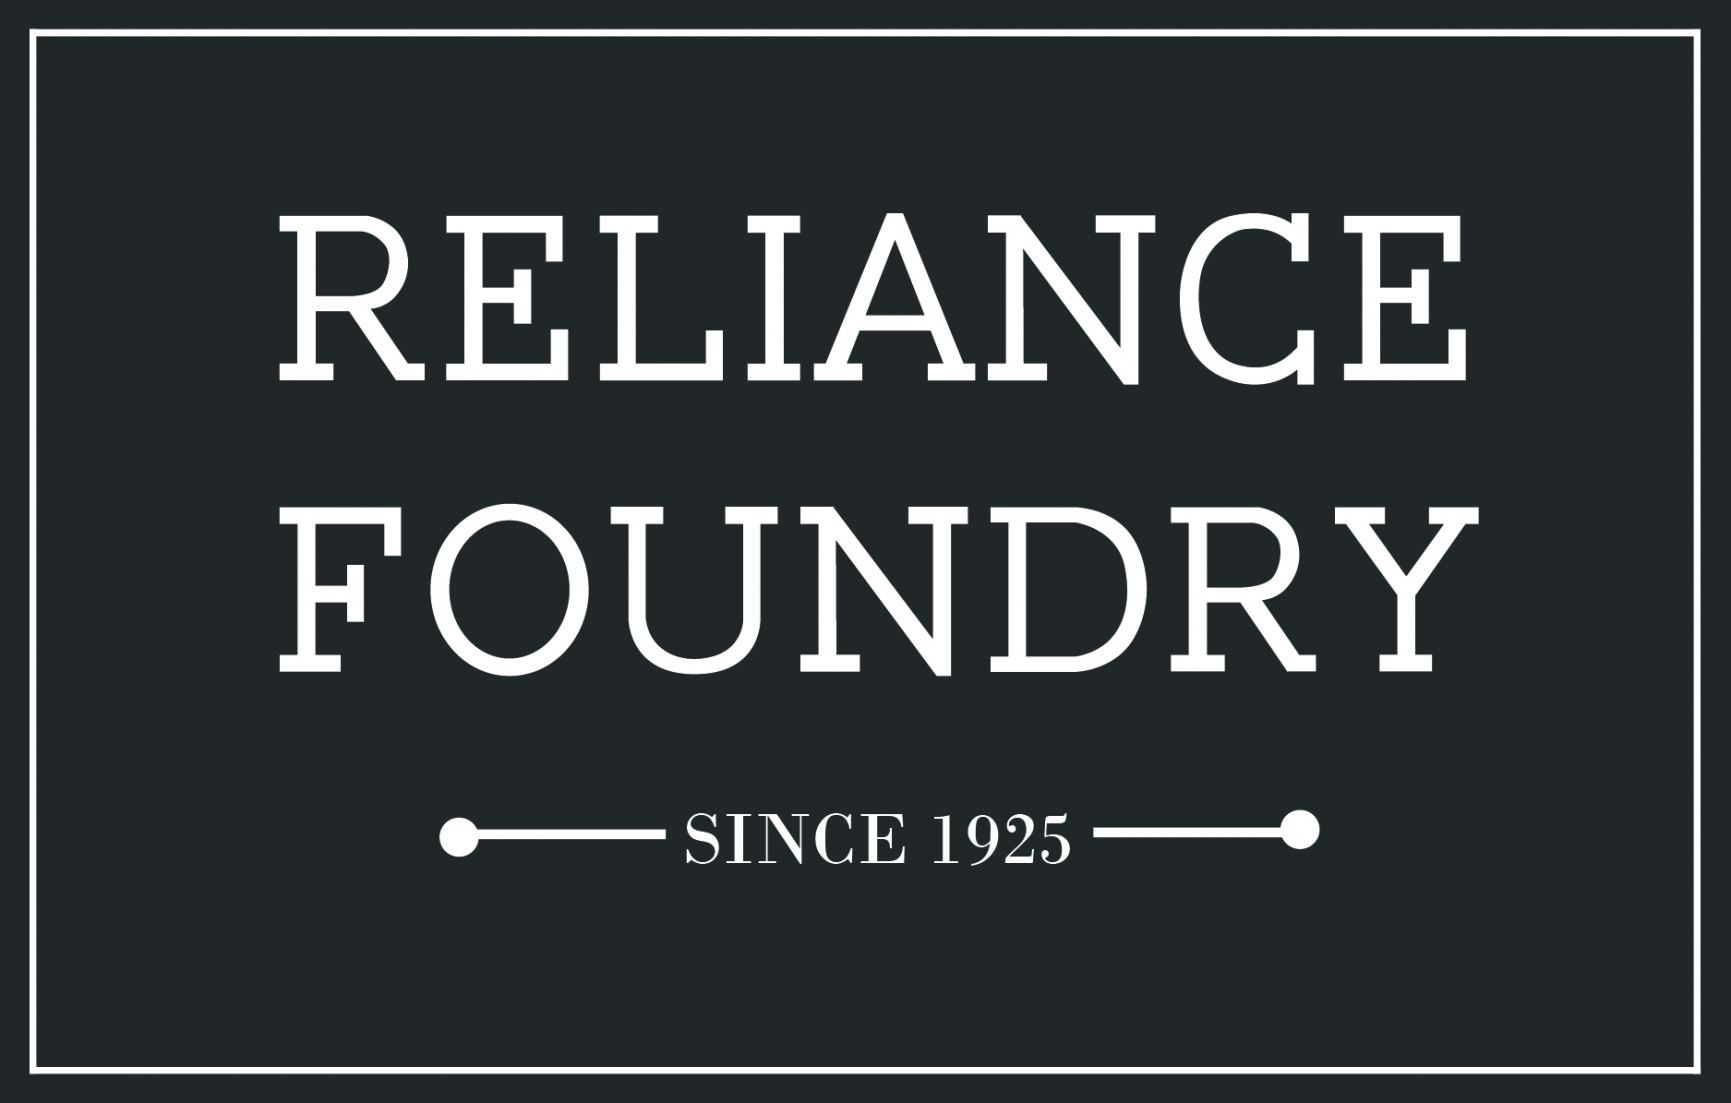 reliancefoundry Logo